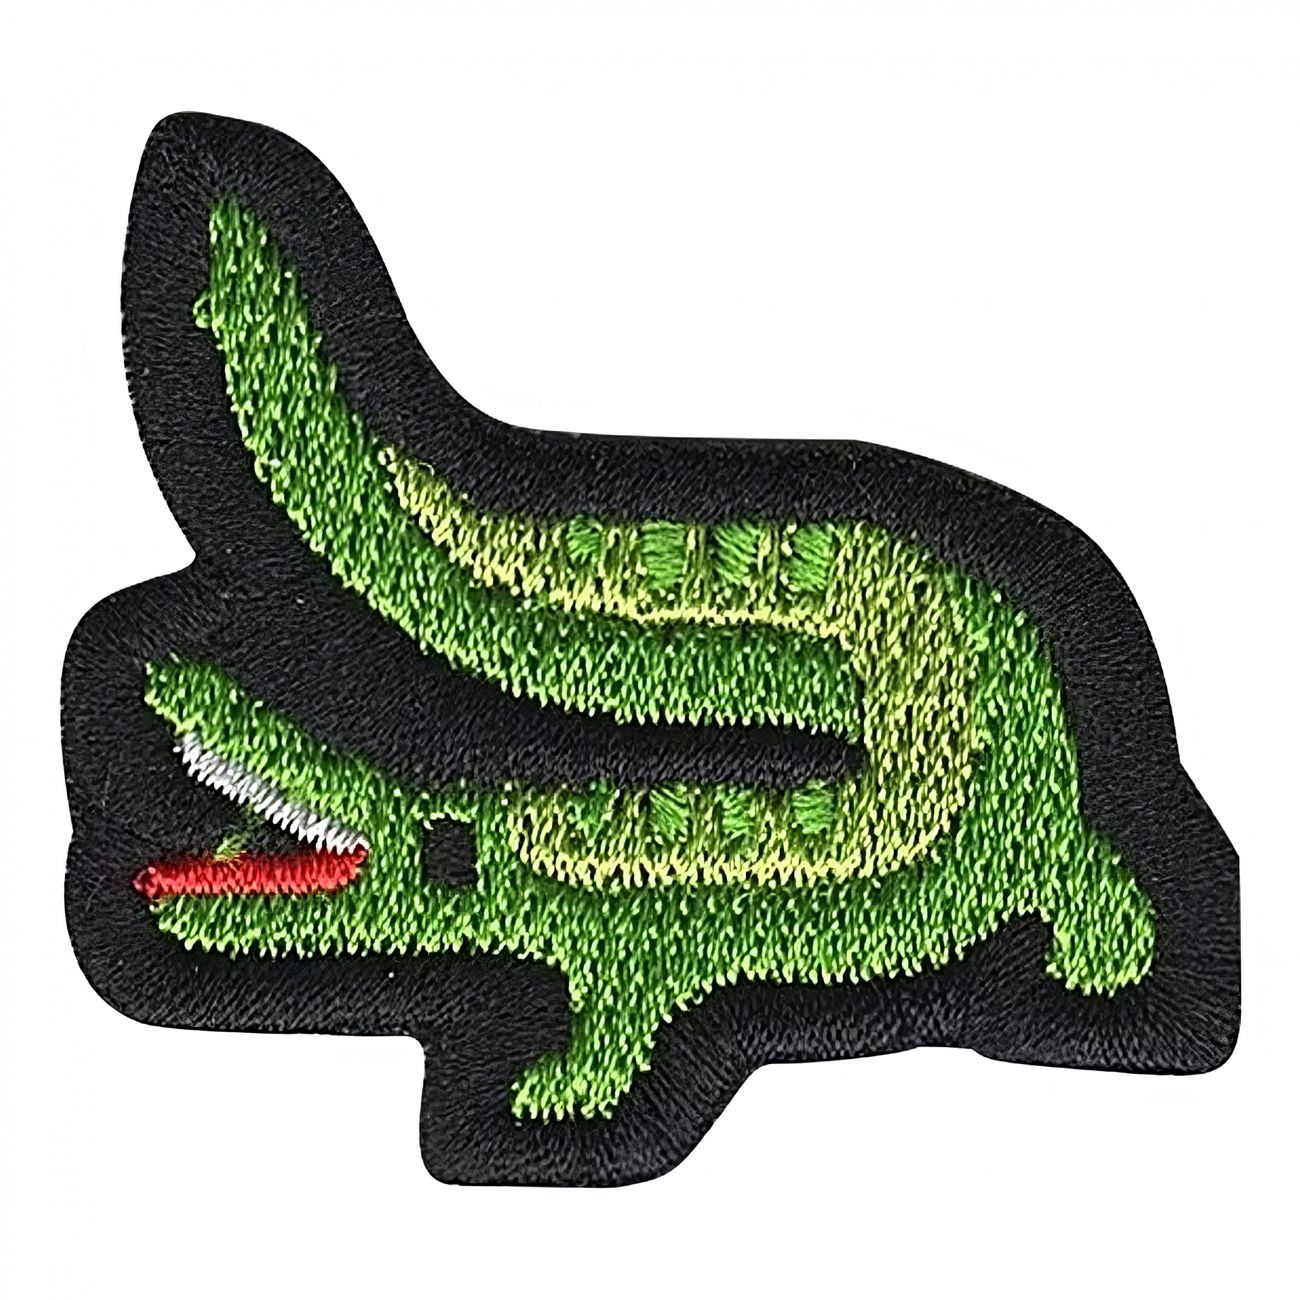 tygmarke-emoji-krokodil-94151-1